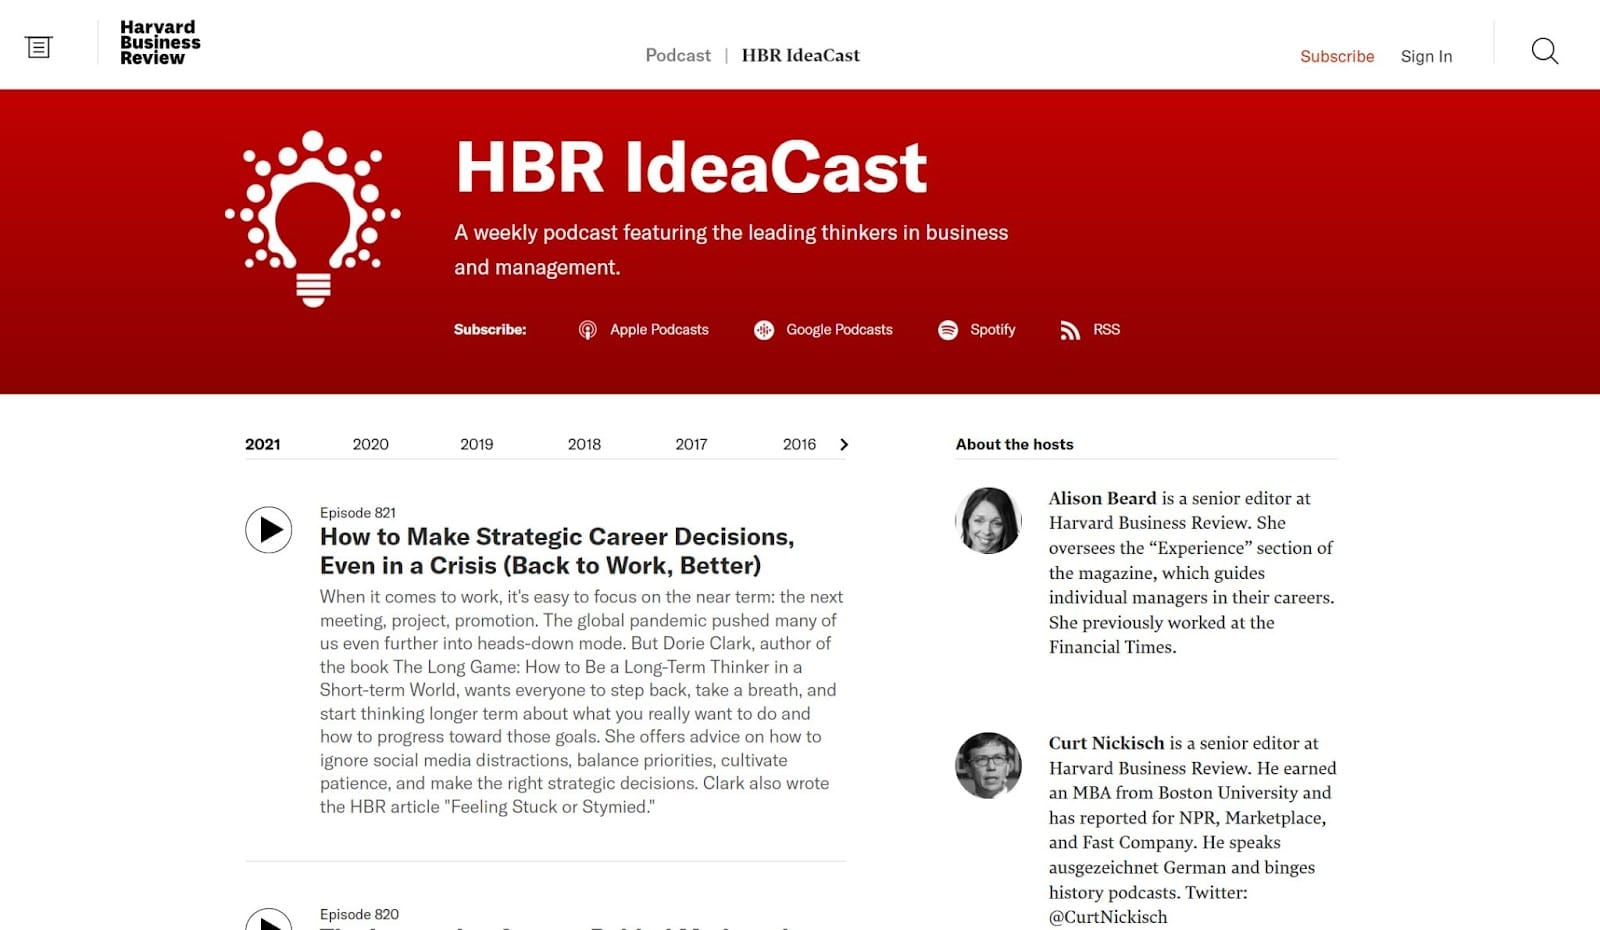 HBR IdeaCast 播客主頁的屏幕截圖